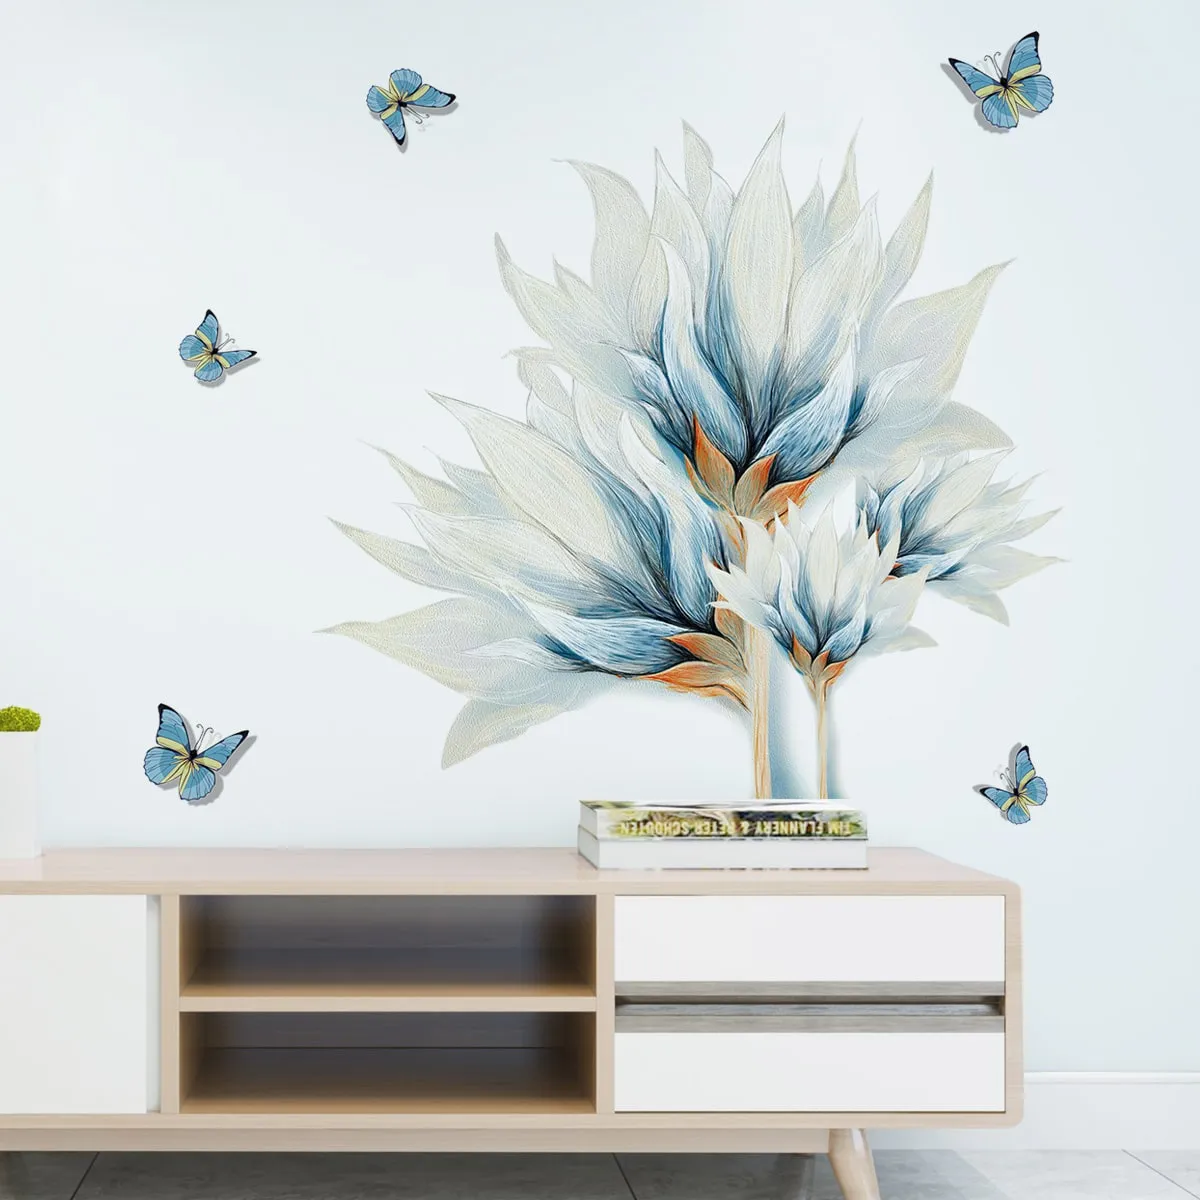 Adesivo murale stampa fiori e farfalle